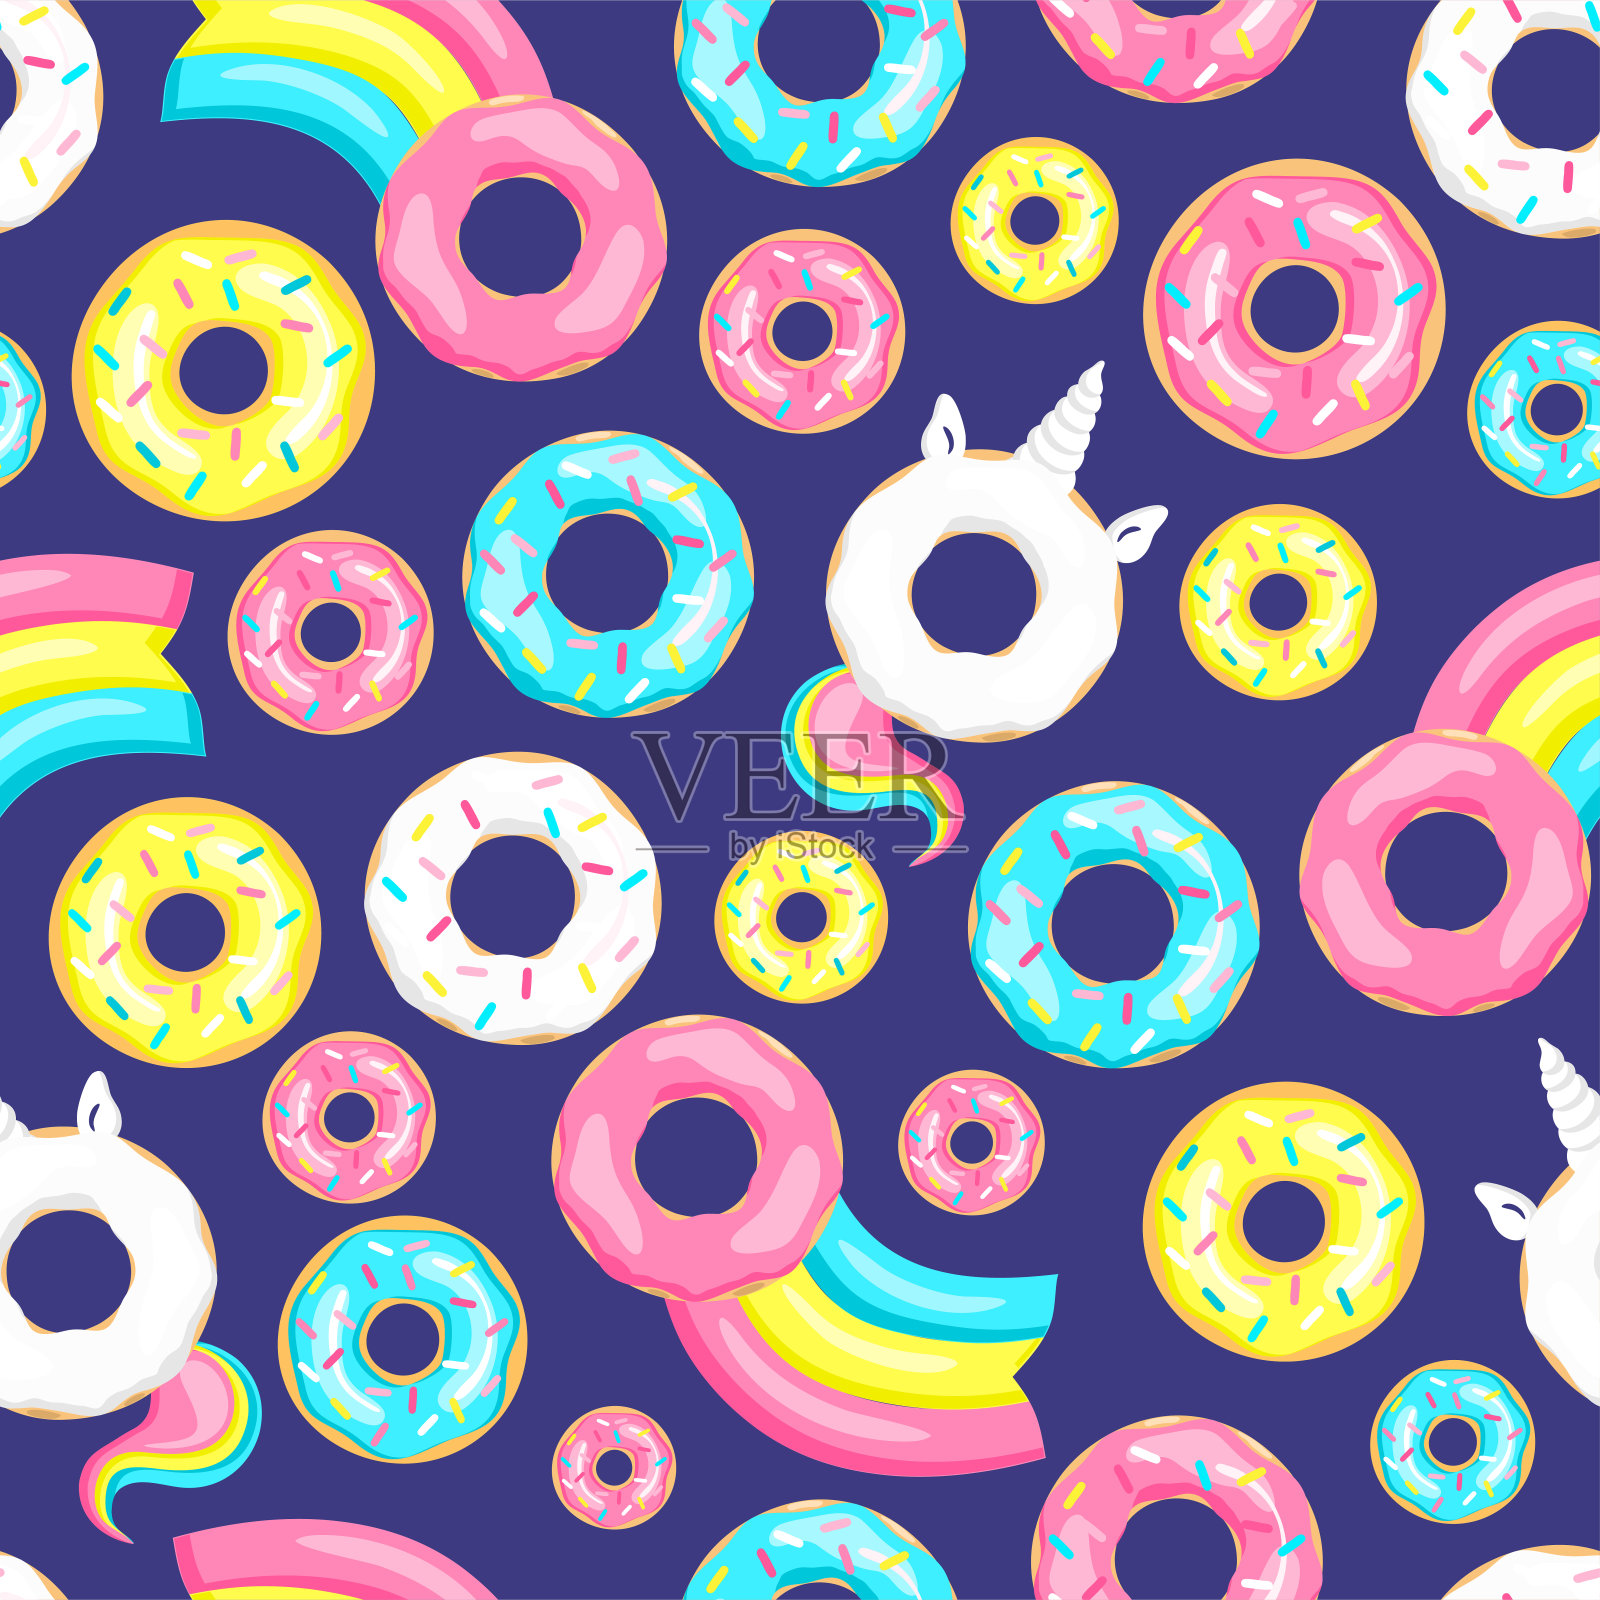 甜甜圈独角兽配白釉和彩虹尾巴，甜甜圈粉、蓝薄荷和柠檬黄，甜甜圈彗星配彩虹。无缝模式。矢量图插画图片素材